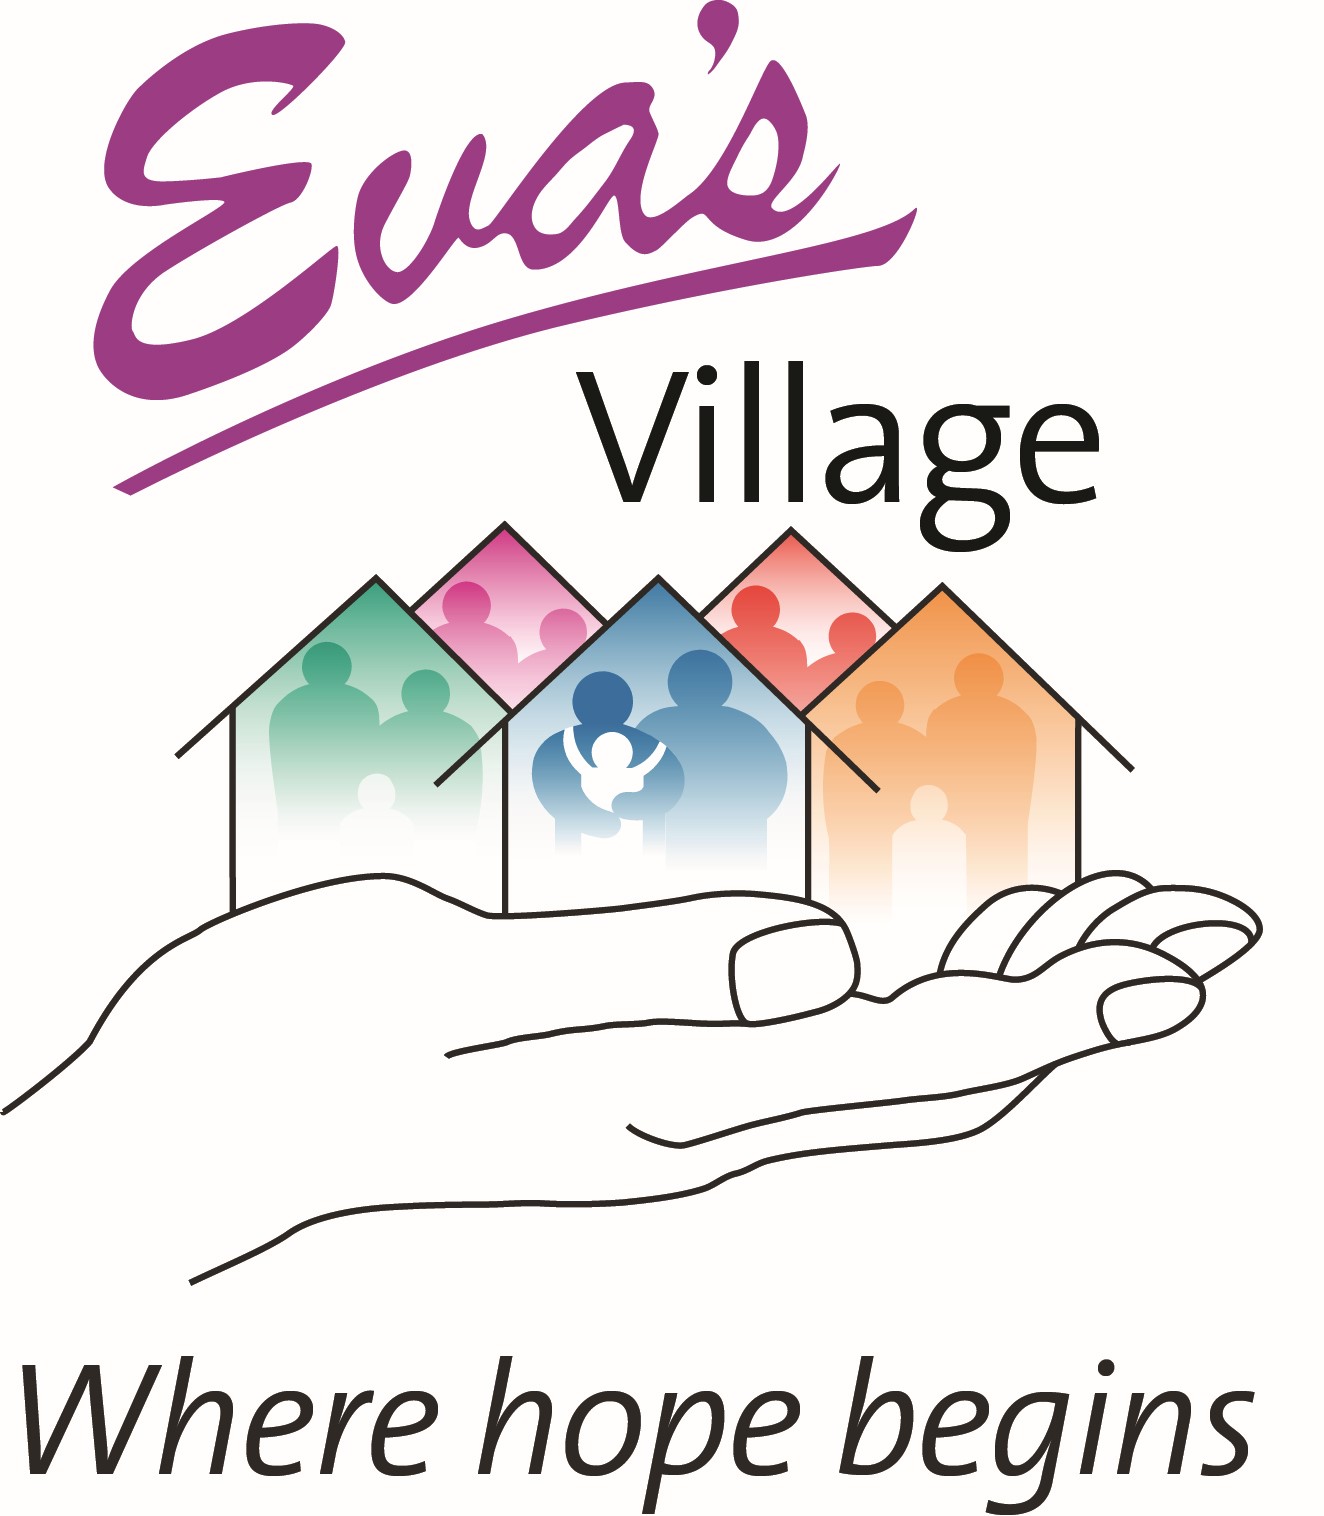 Eva's Village